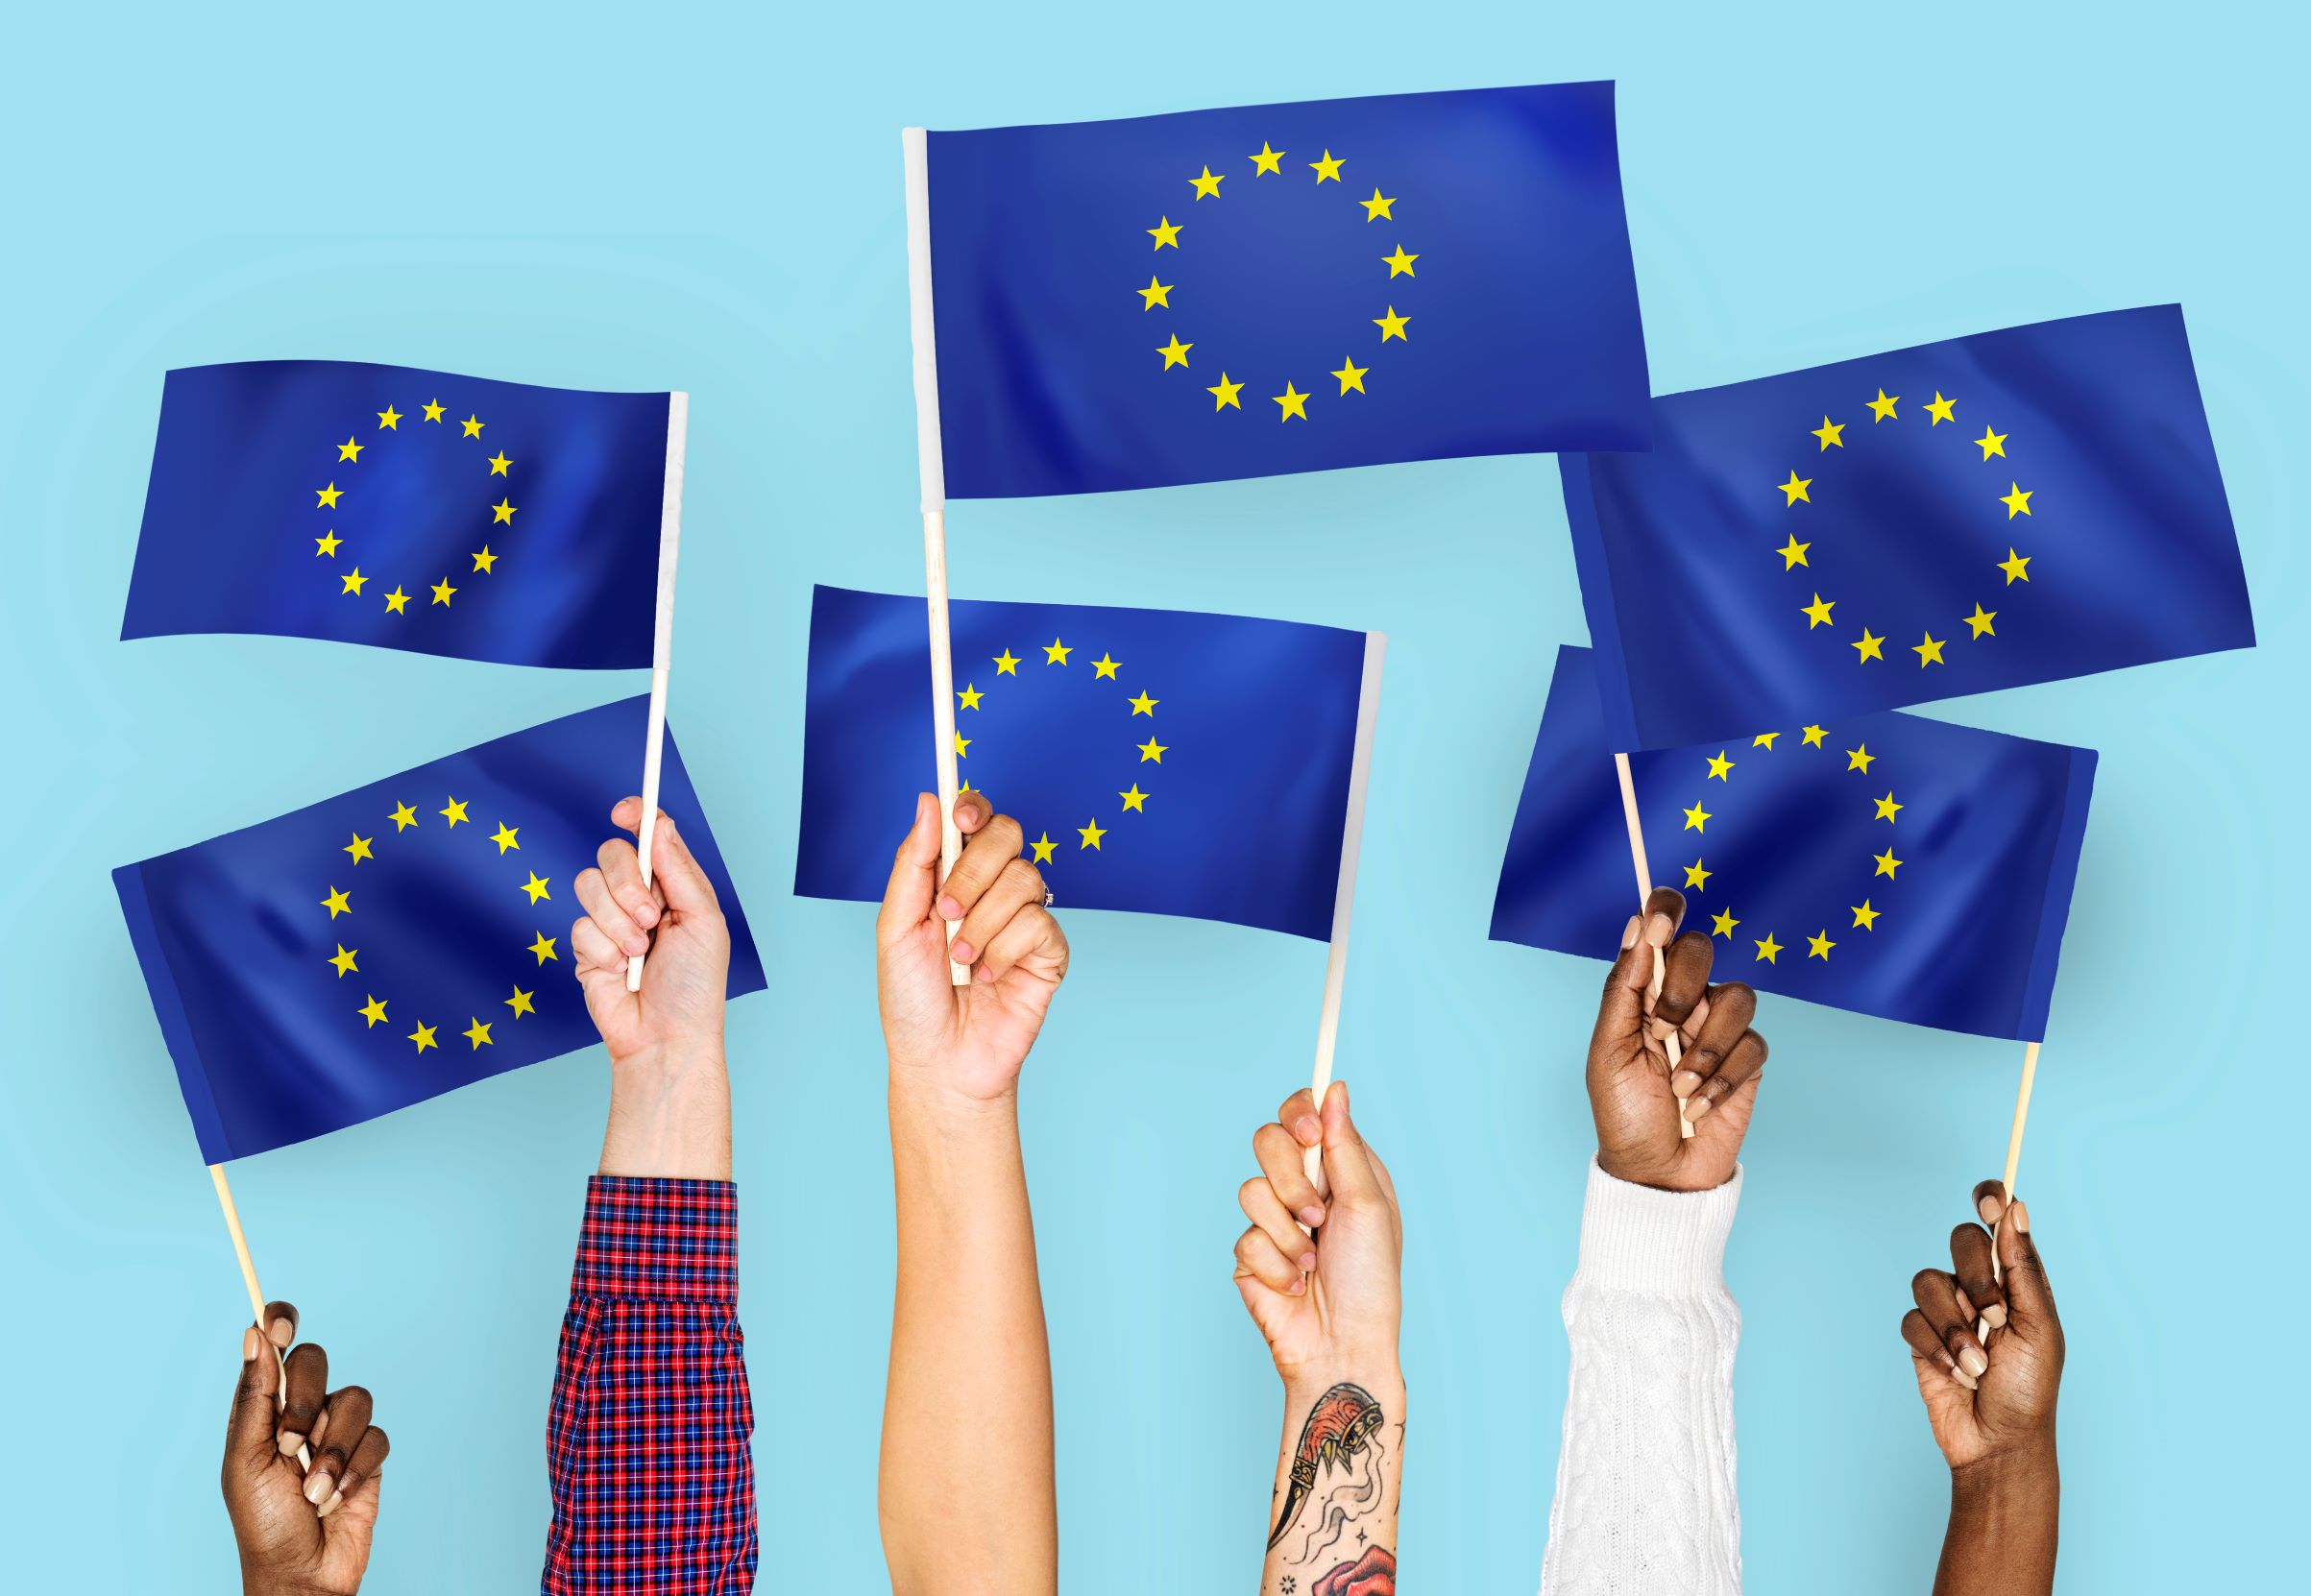 طرق وشروط الحصول على الإقامة في دول الاتحاد الأوروبي عن طريق الاستثمار- التأشيرة الذهبية